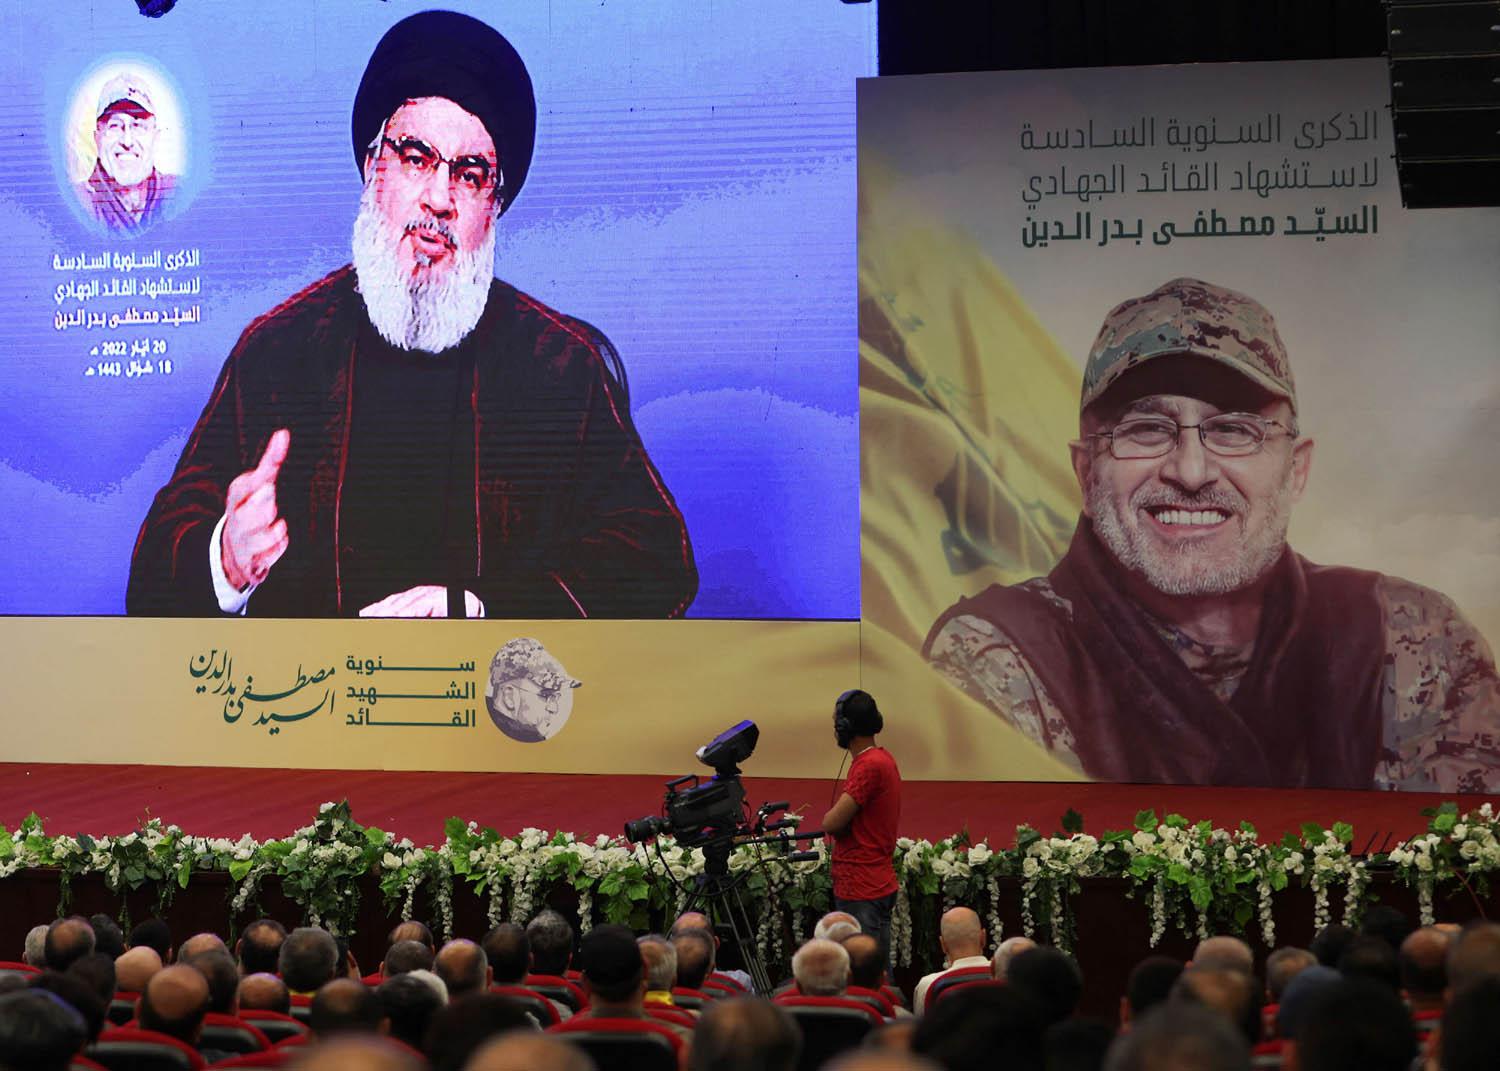 زعيم حزب الله اللبناني حسن نصرالله في كلمة مسجلة لمؤيديه